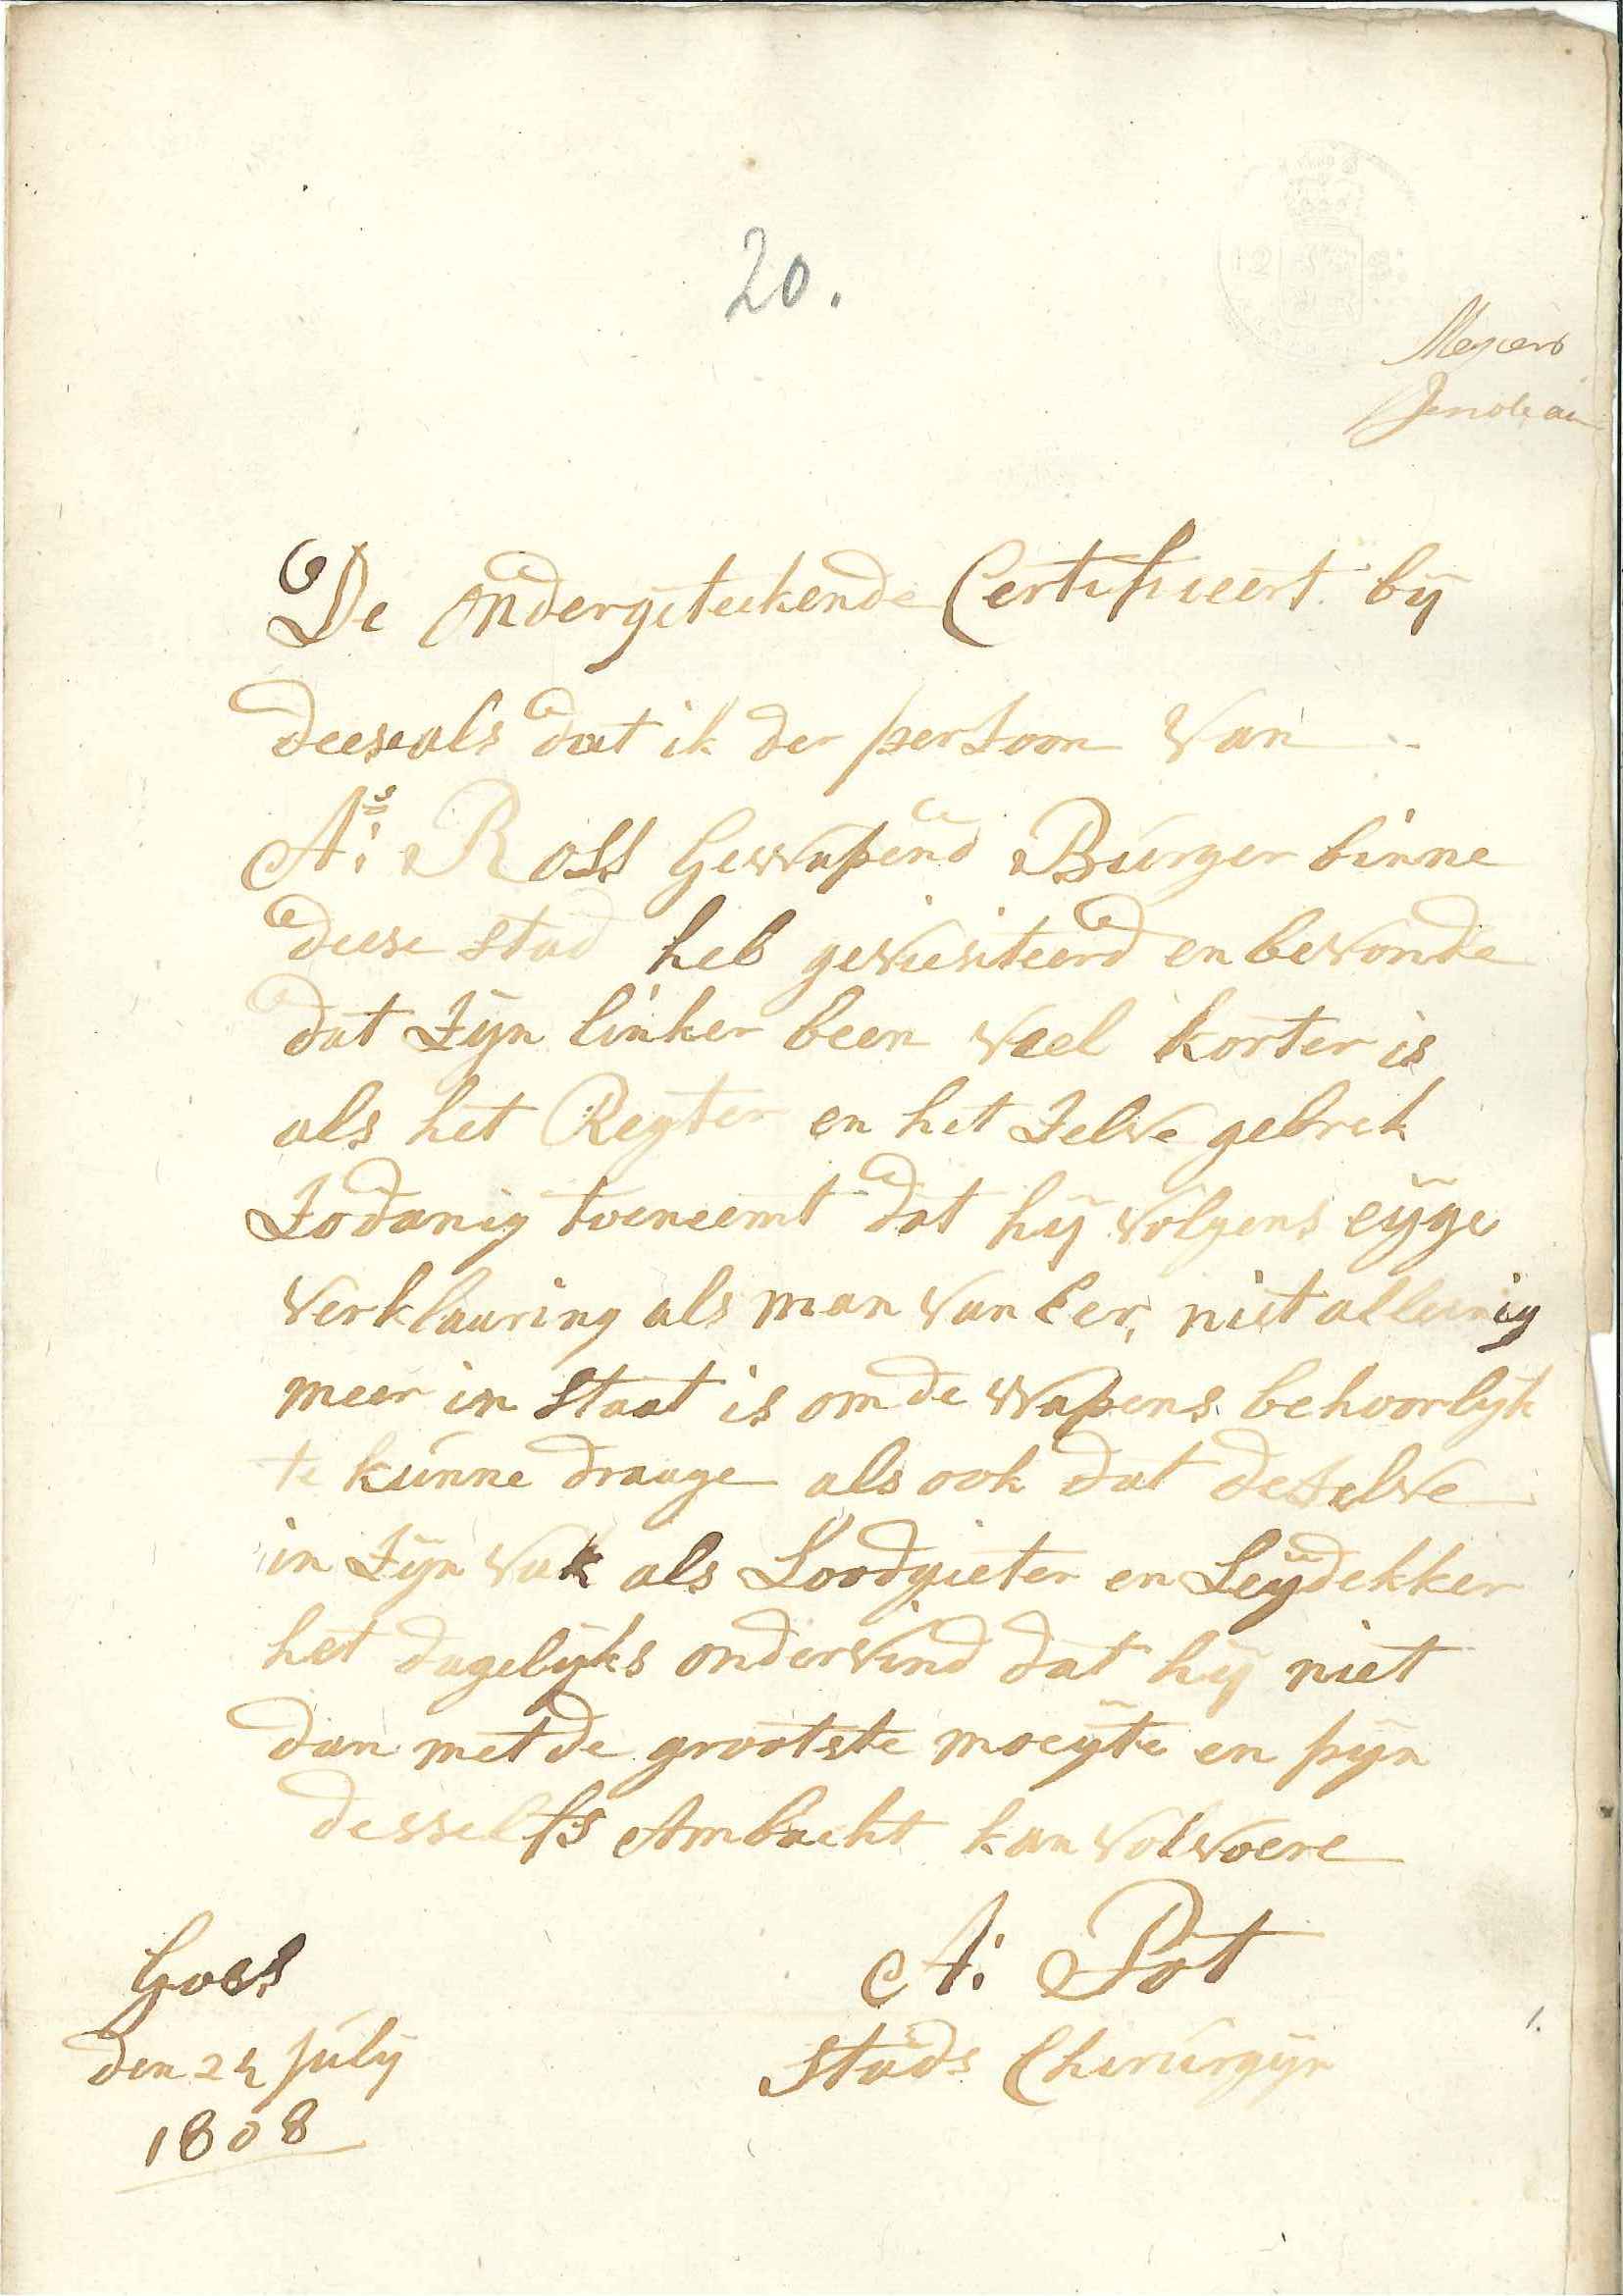 Verklaring dat A. Ross ongeschikt is voor de burgerwacht, 1808.